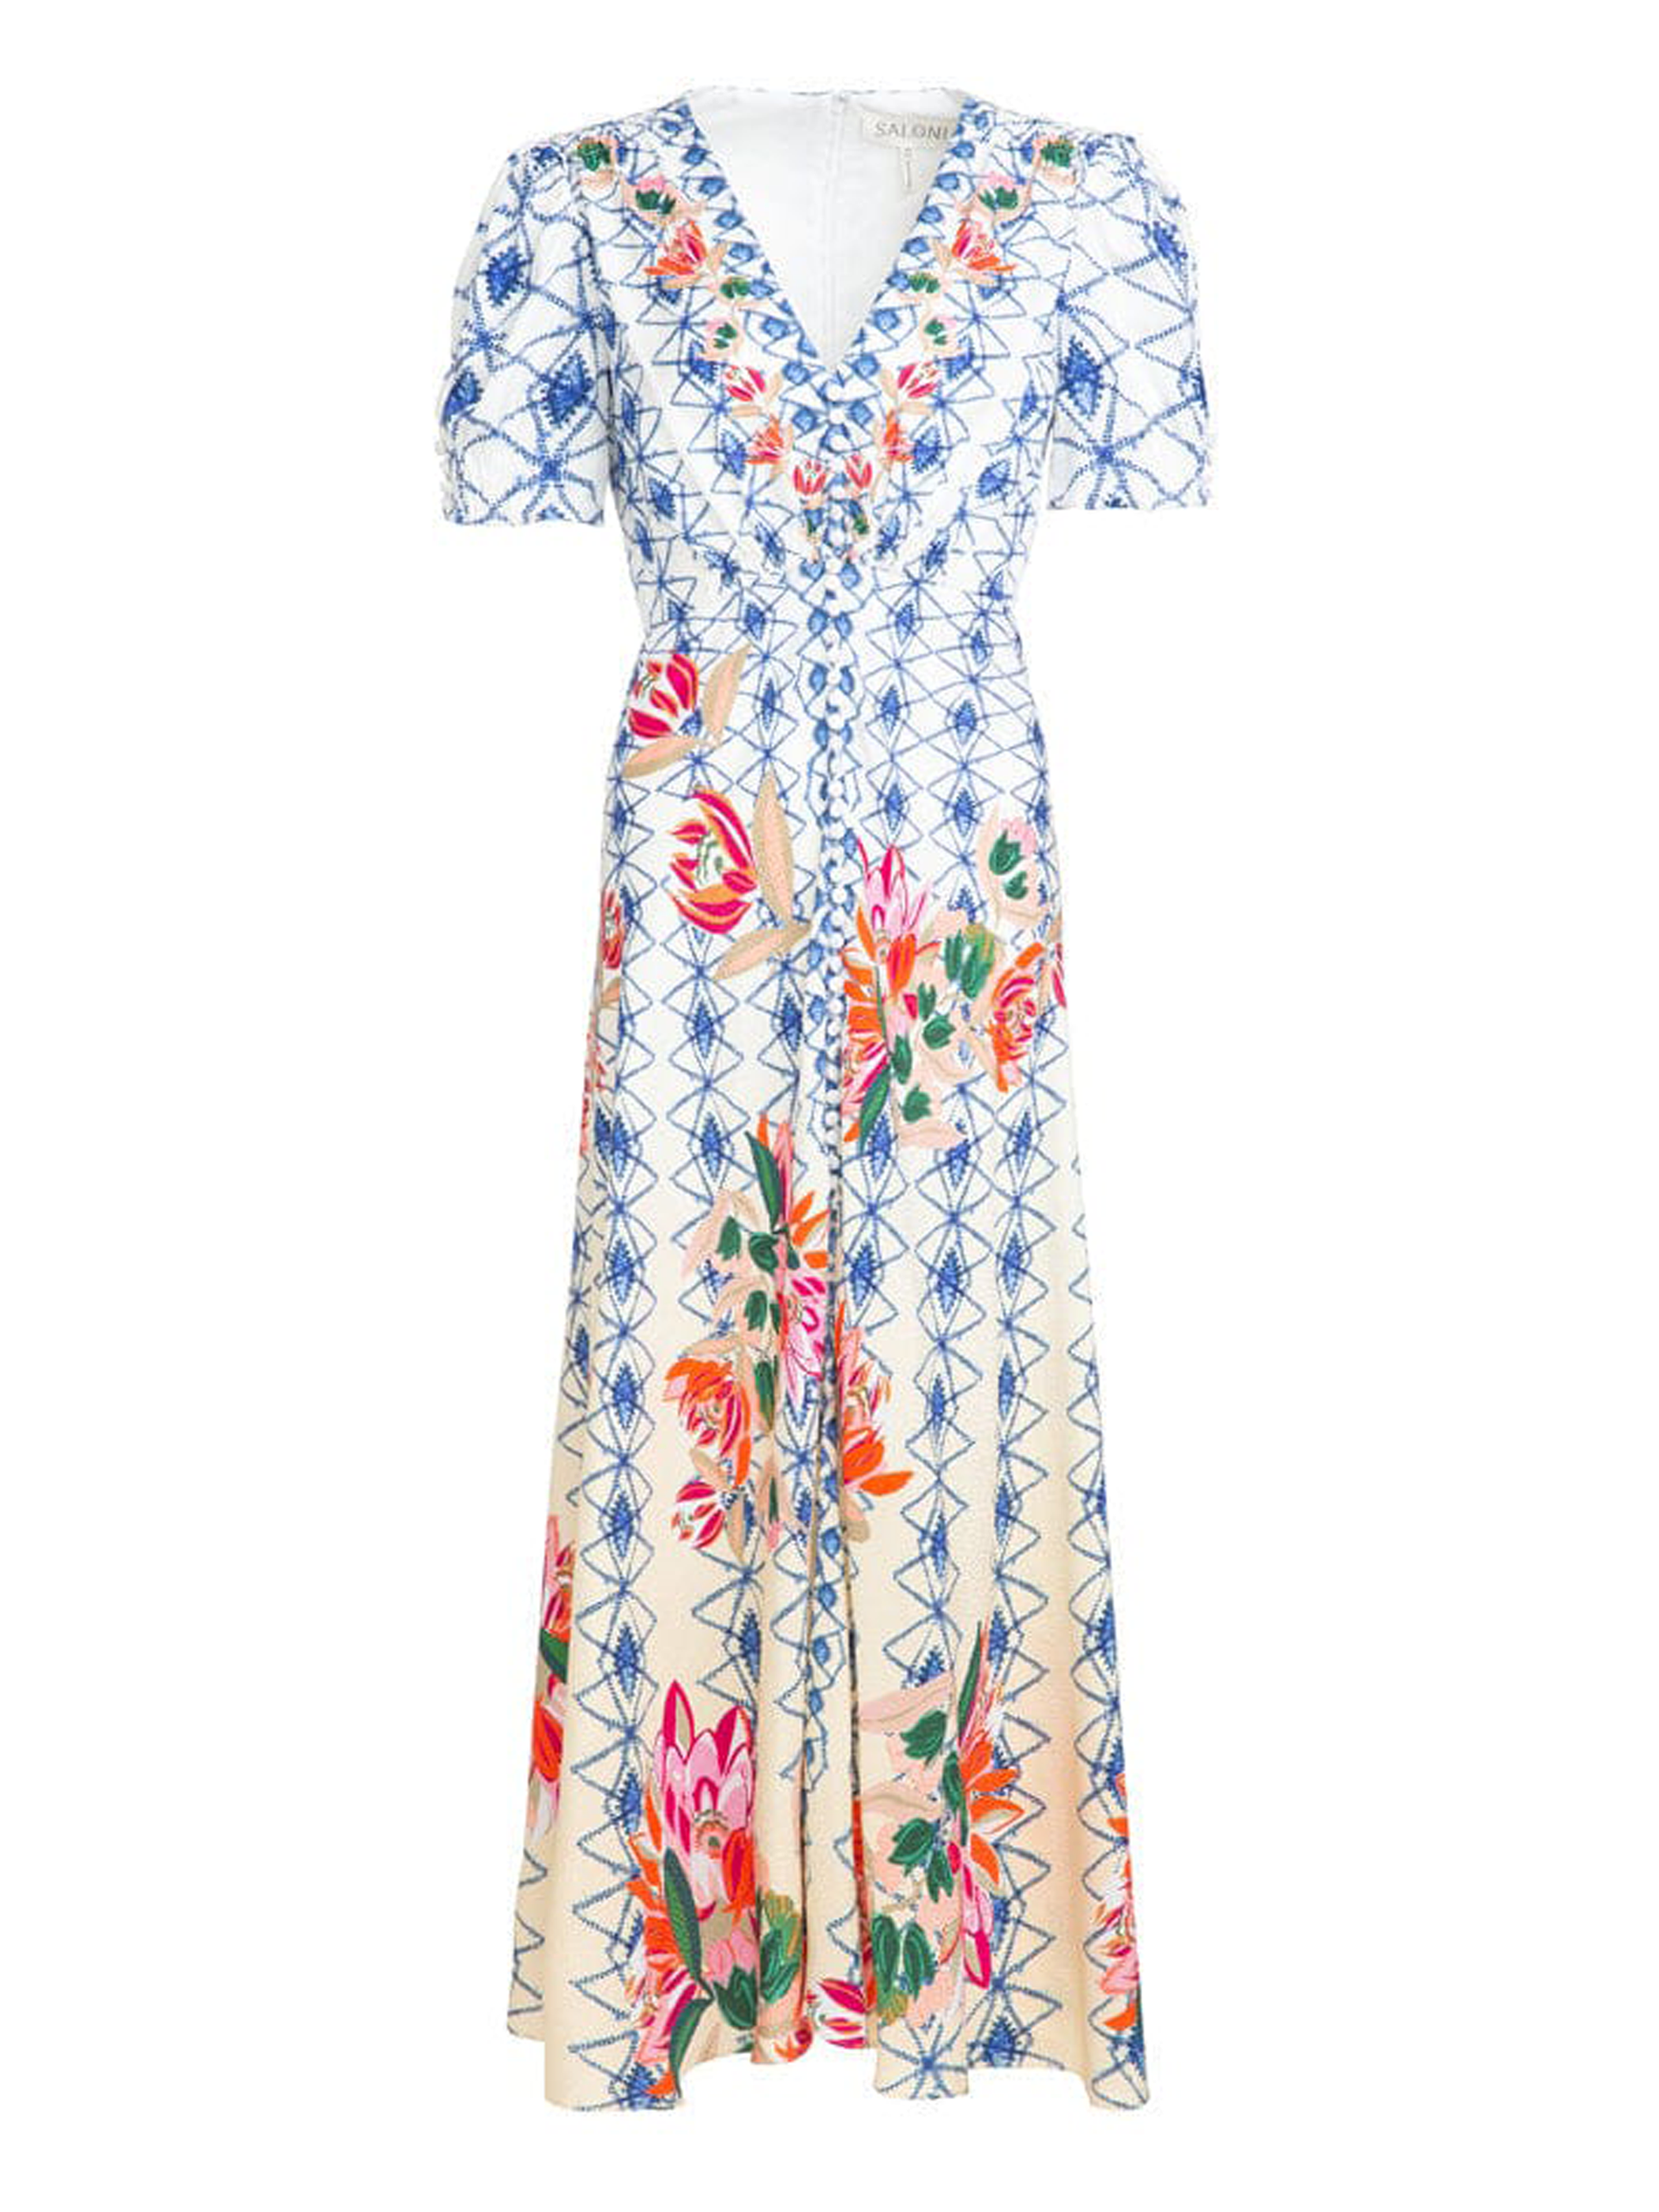 Lea Long Dress in Opal Trellis print